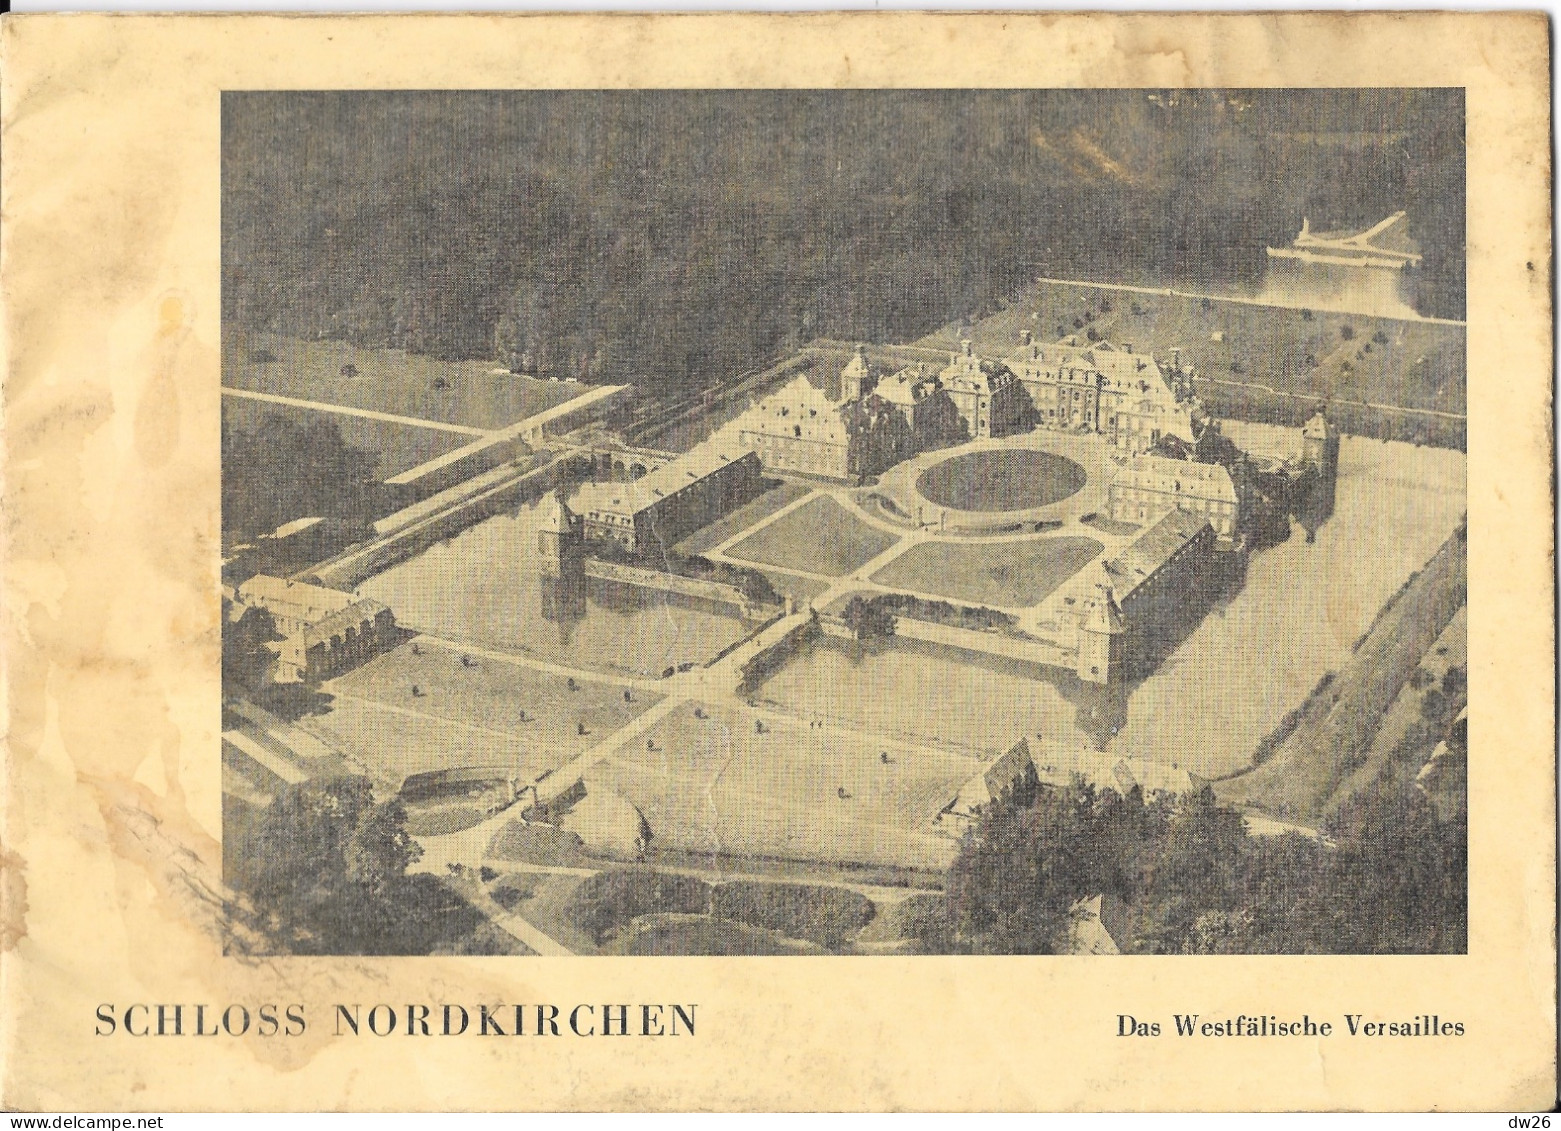 Dépliant Touristique: Schloss Nordkirchen (Das Westfälische Versailles) Le Versailles Allemand, Livret 20 Pages - Dépliants Touristiques